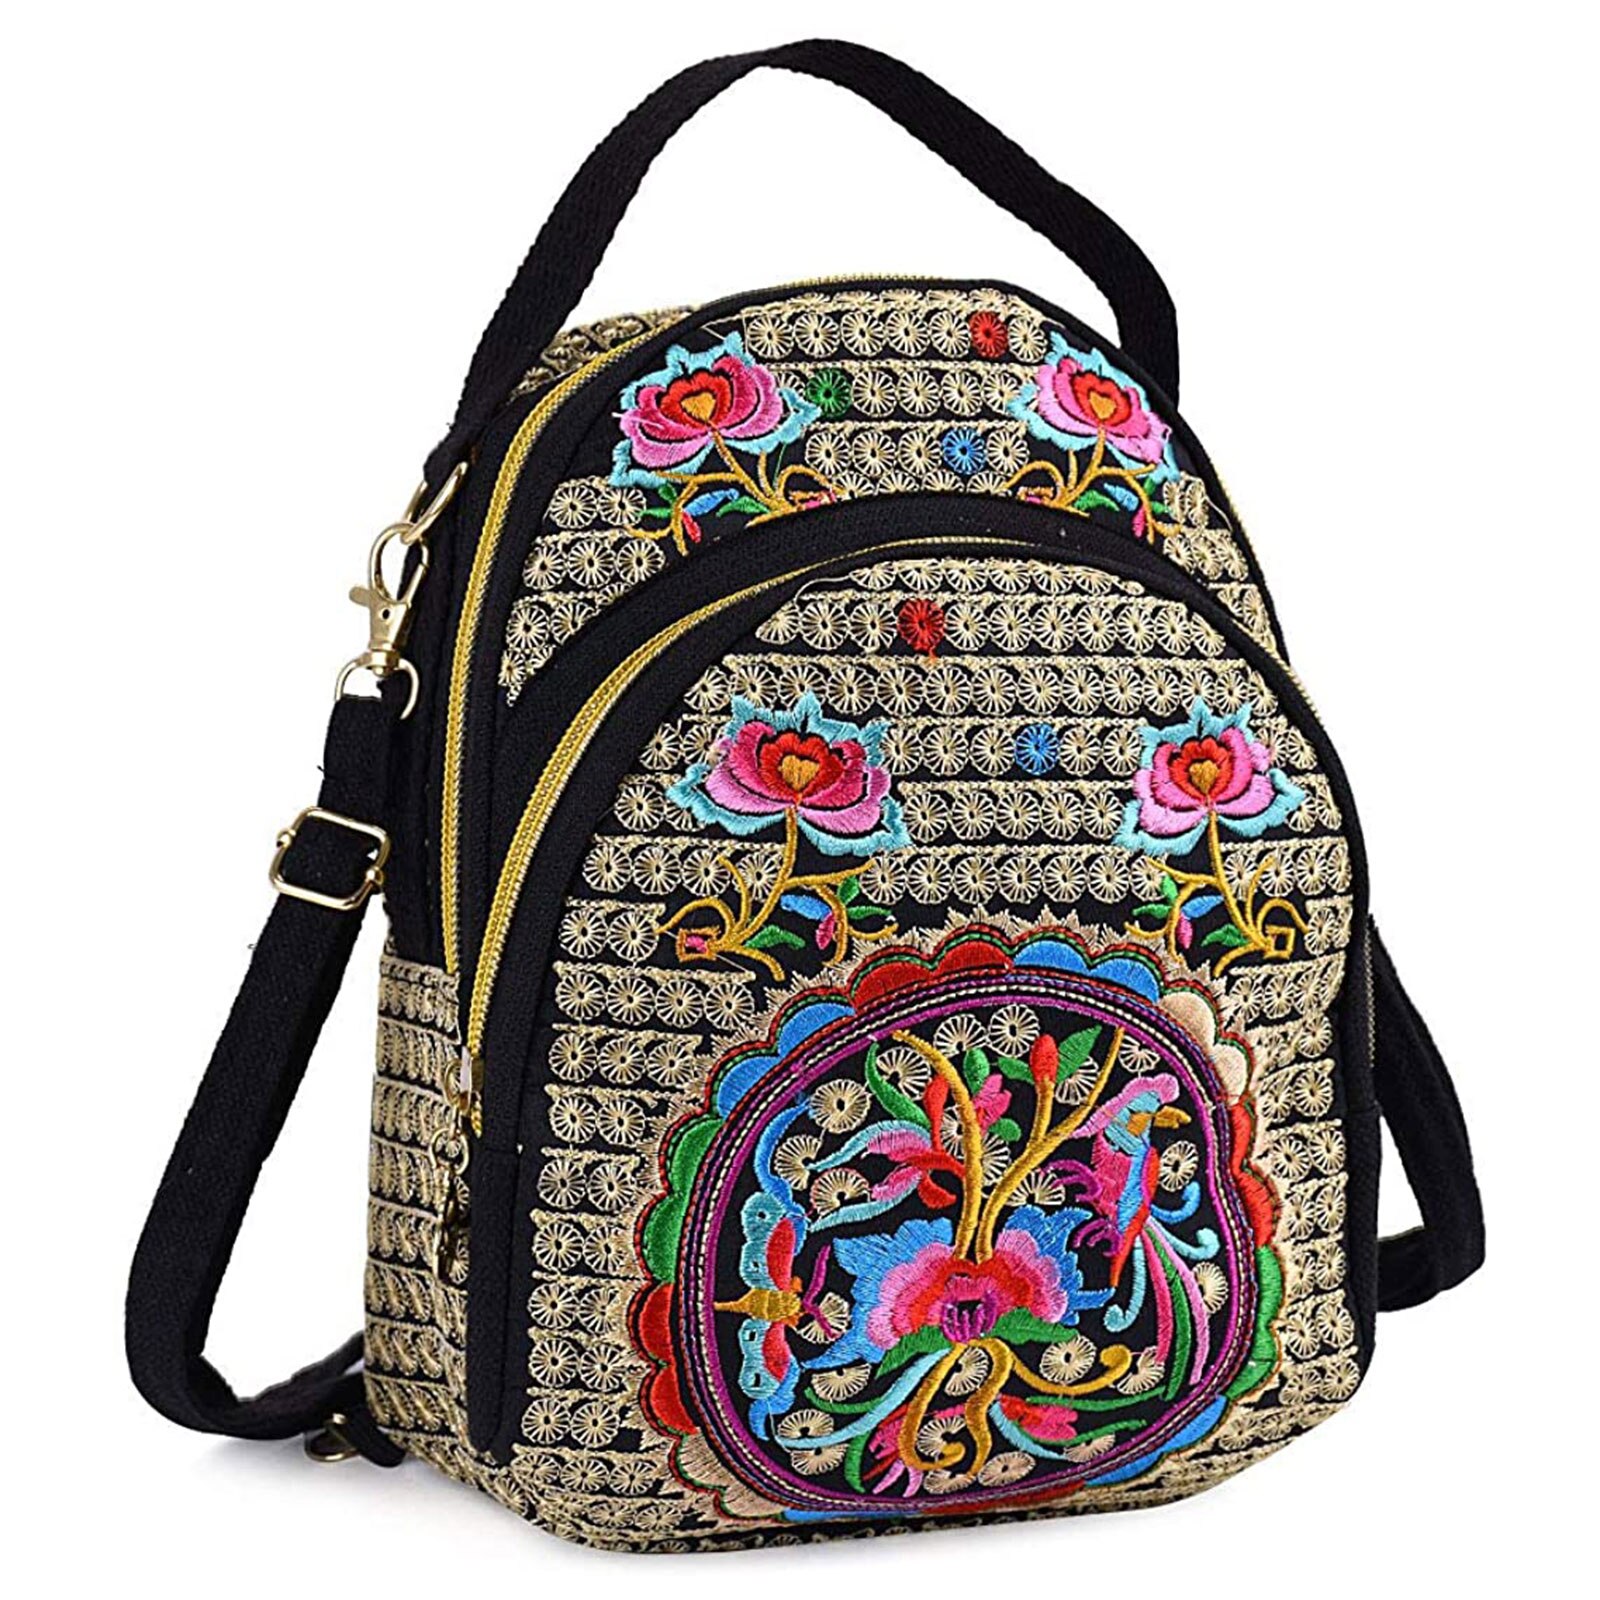 Kvinder pige vintage mini rygsæk lærred broderet blomst lynlås rejse skulder taske dagsæk til rejse shopping: D